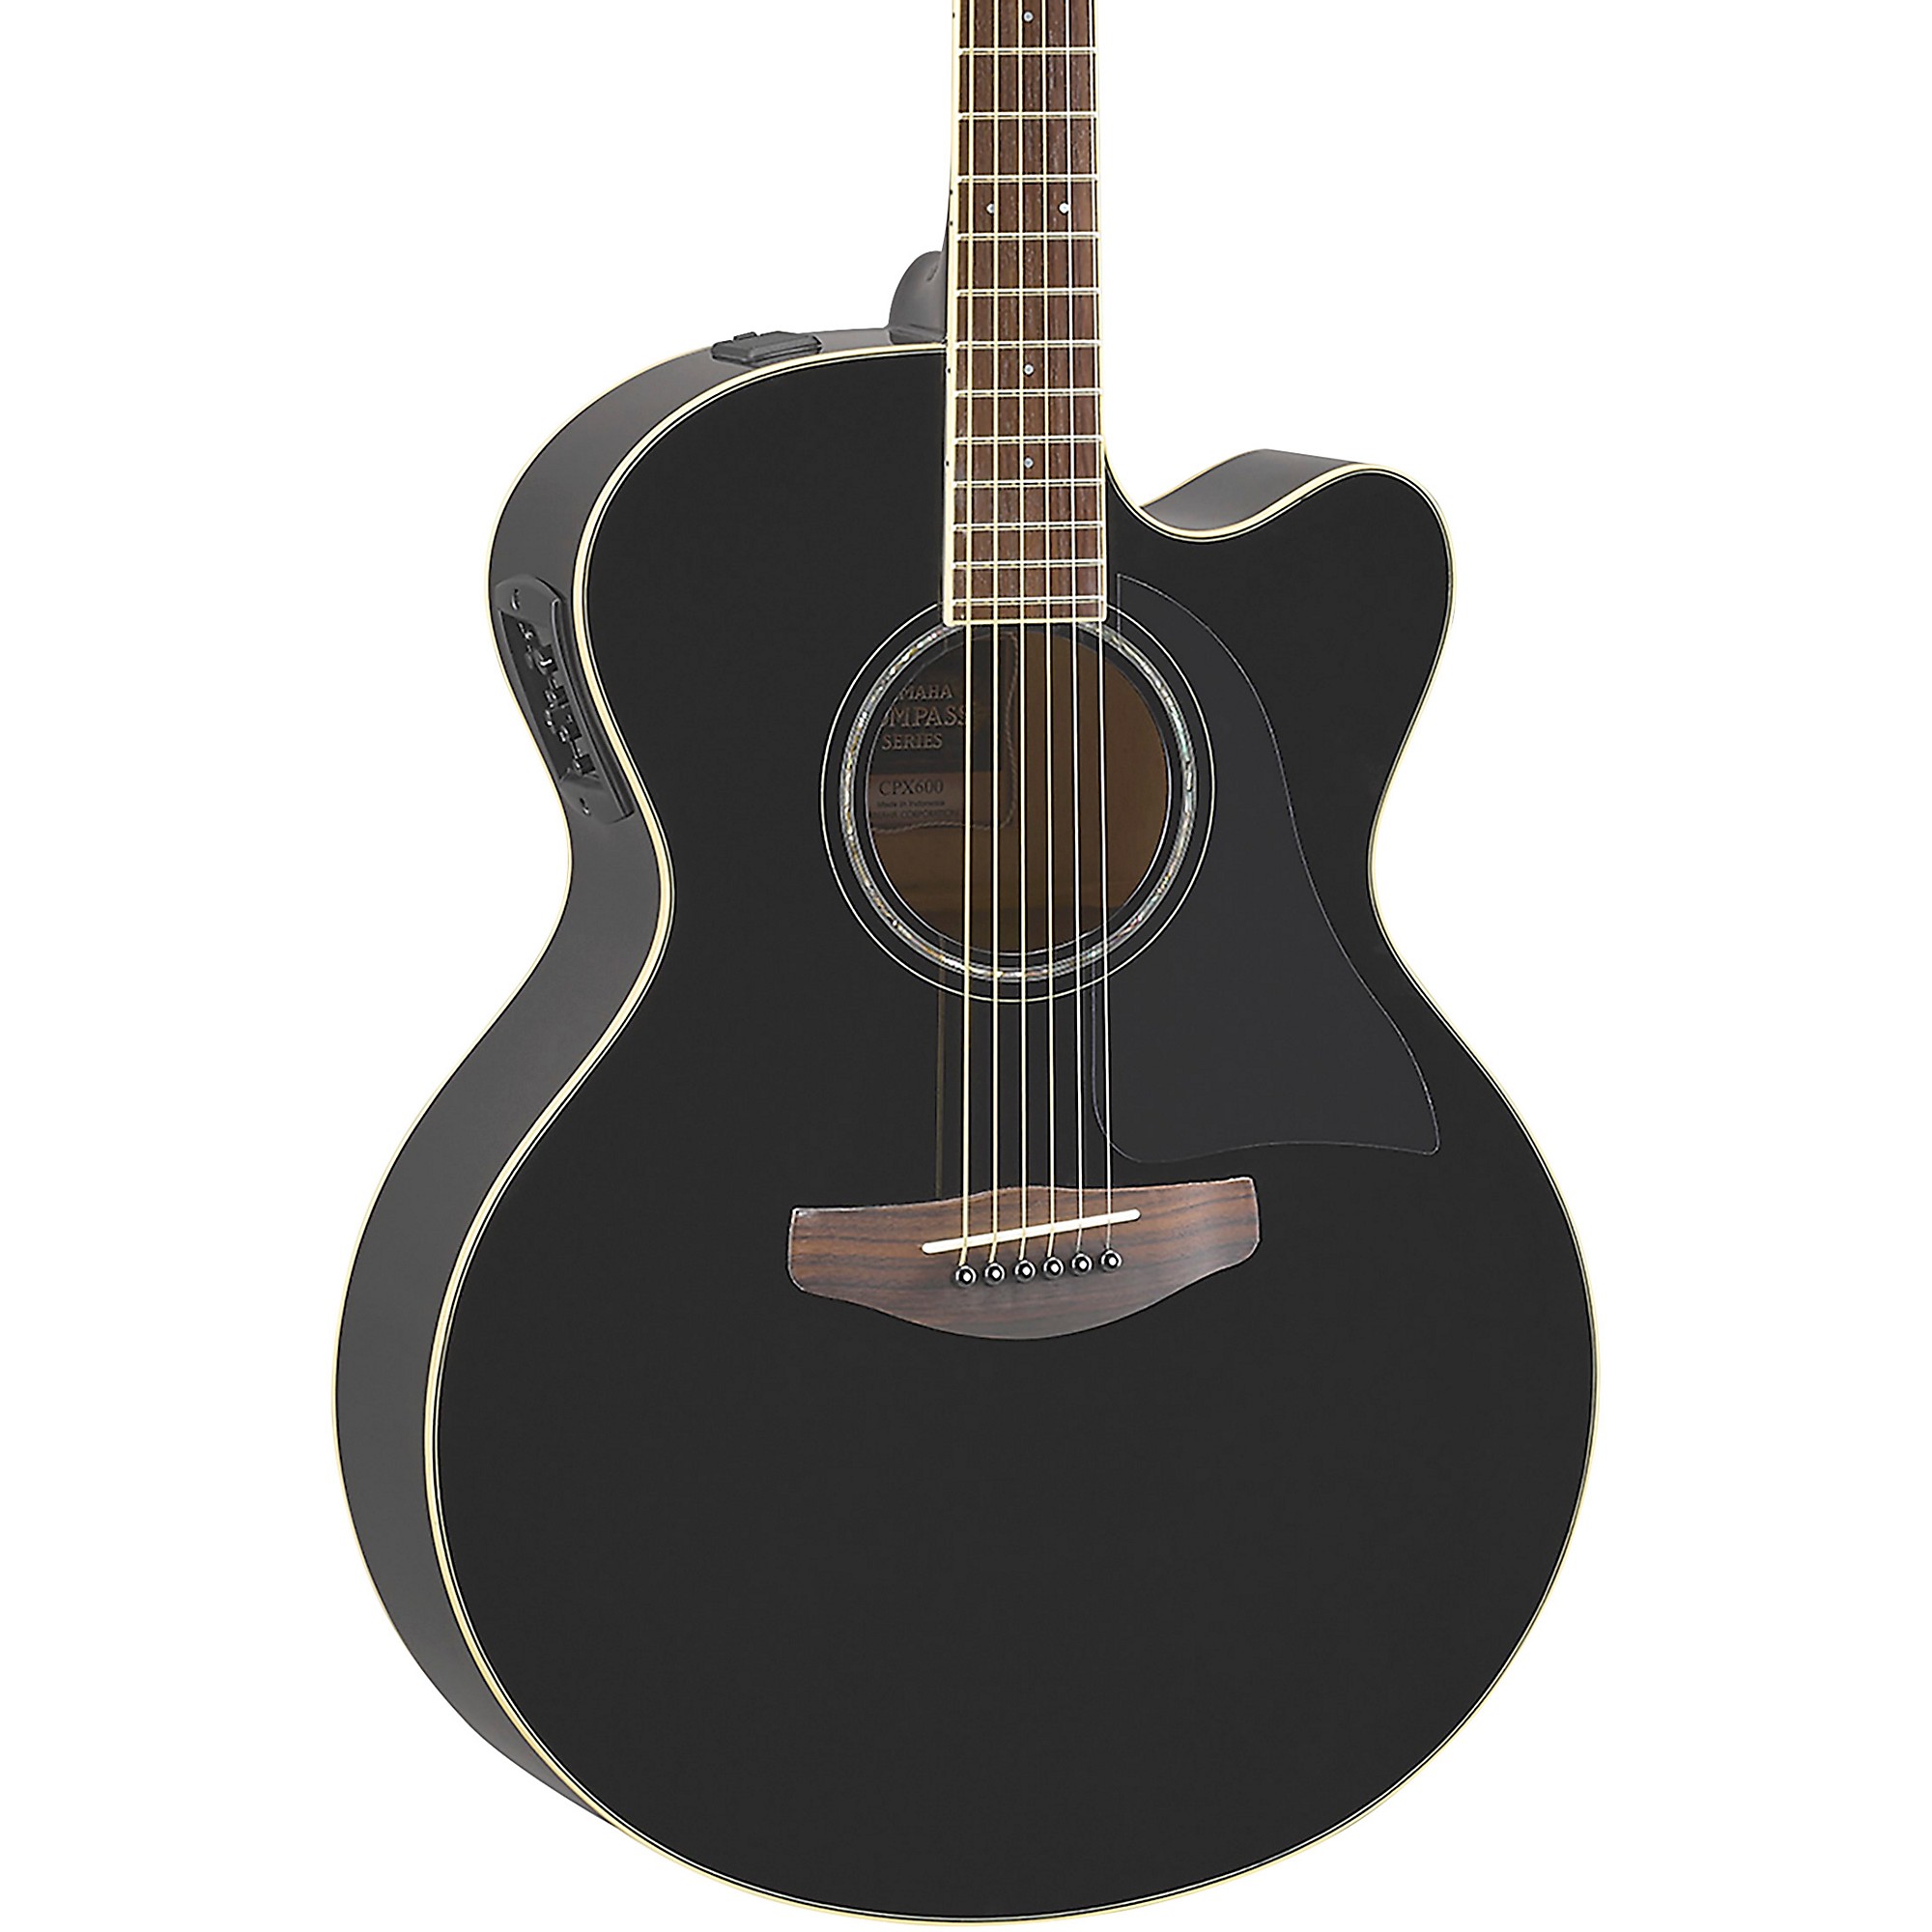 Акустически-электрическая гитара Yamaha CPX600 Medium Jumbo, черная